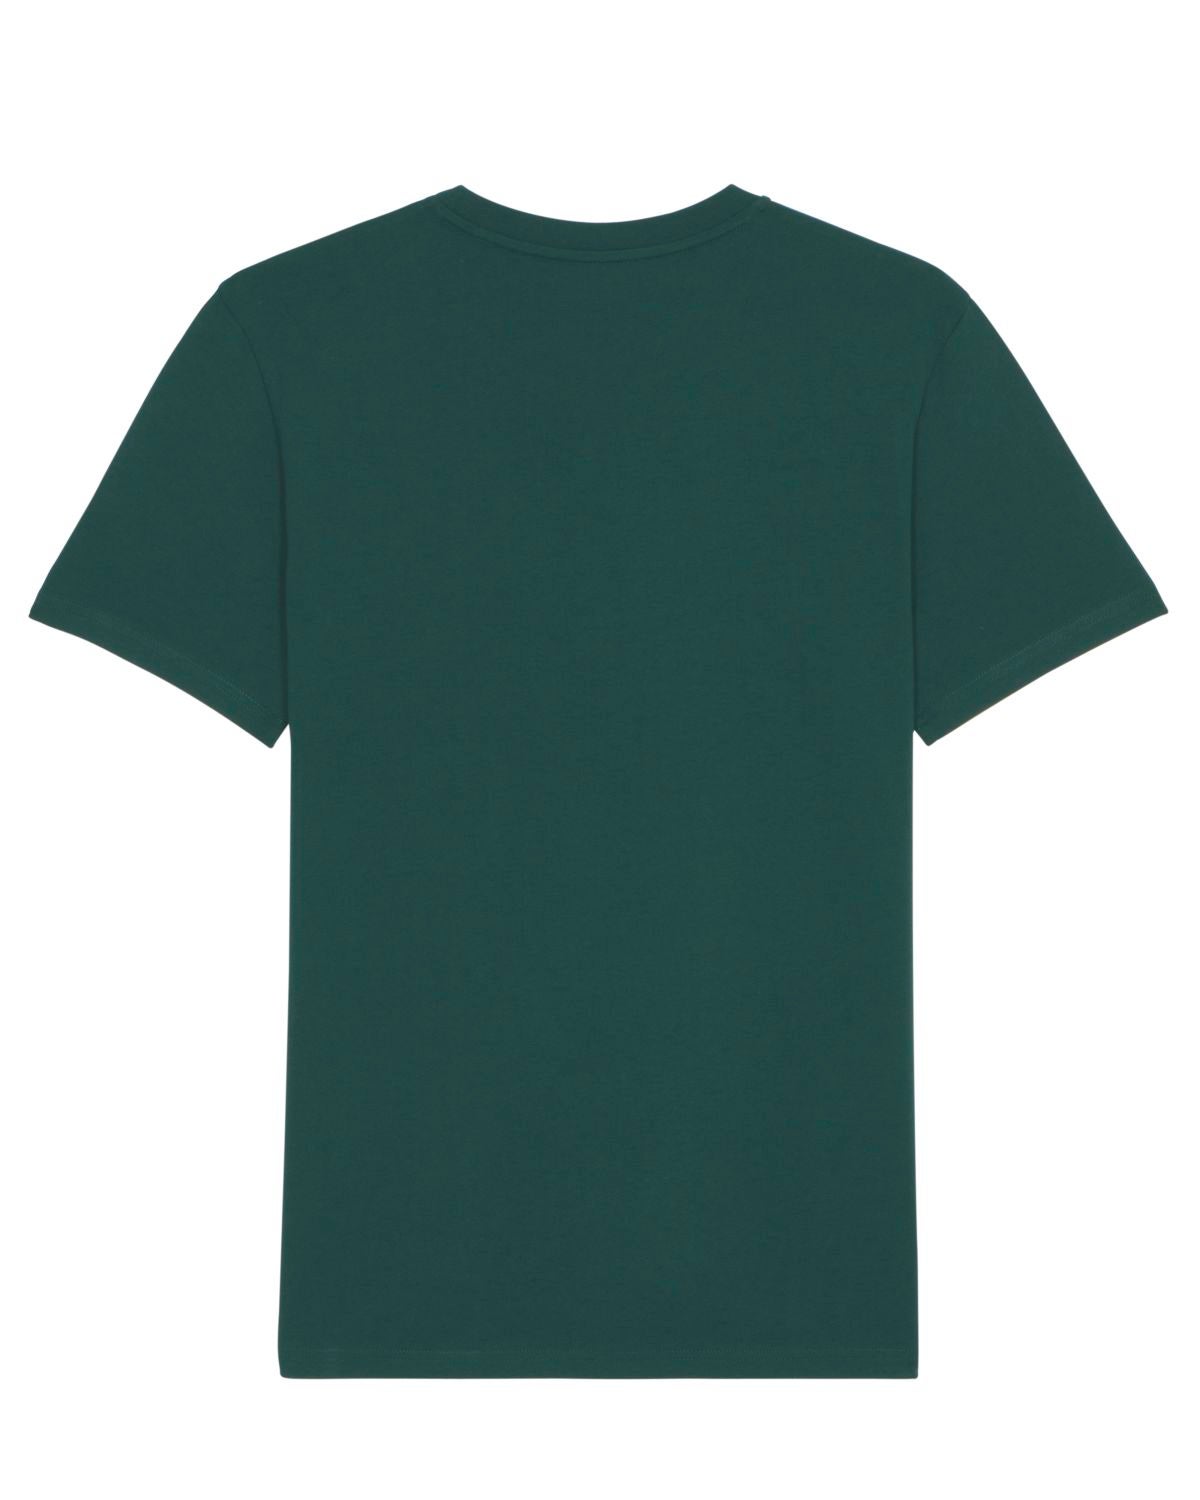 JUNG Shirt glazed green M